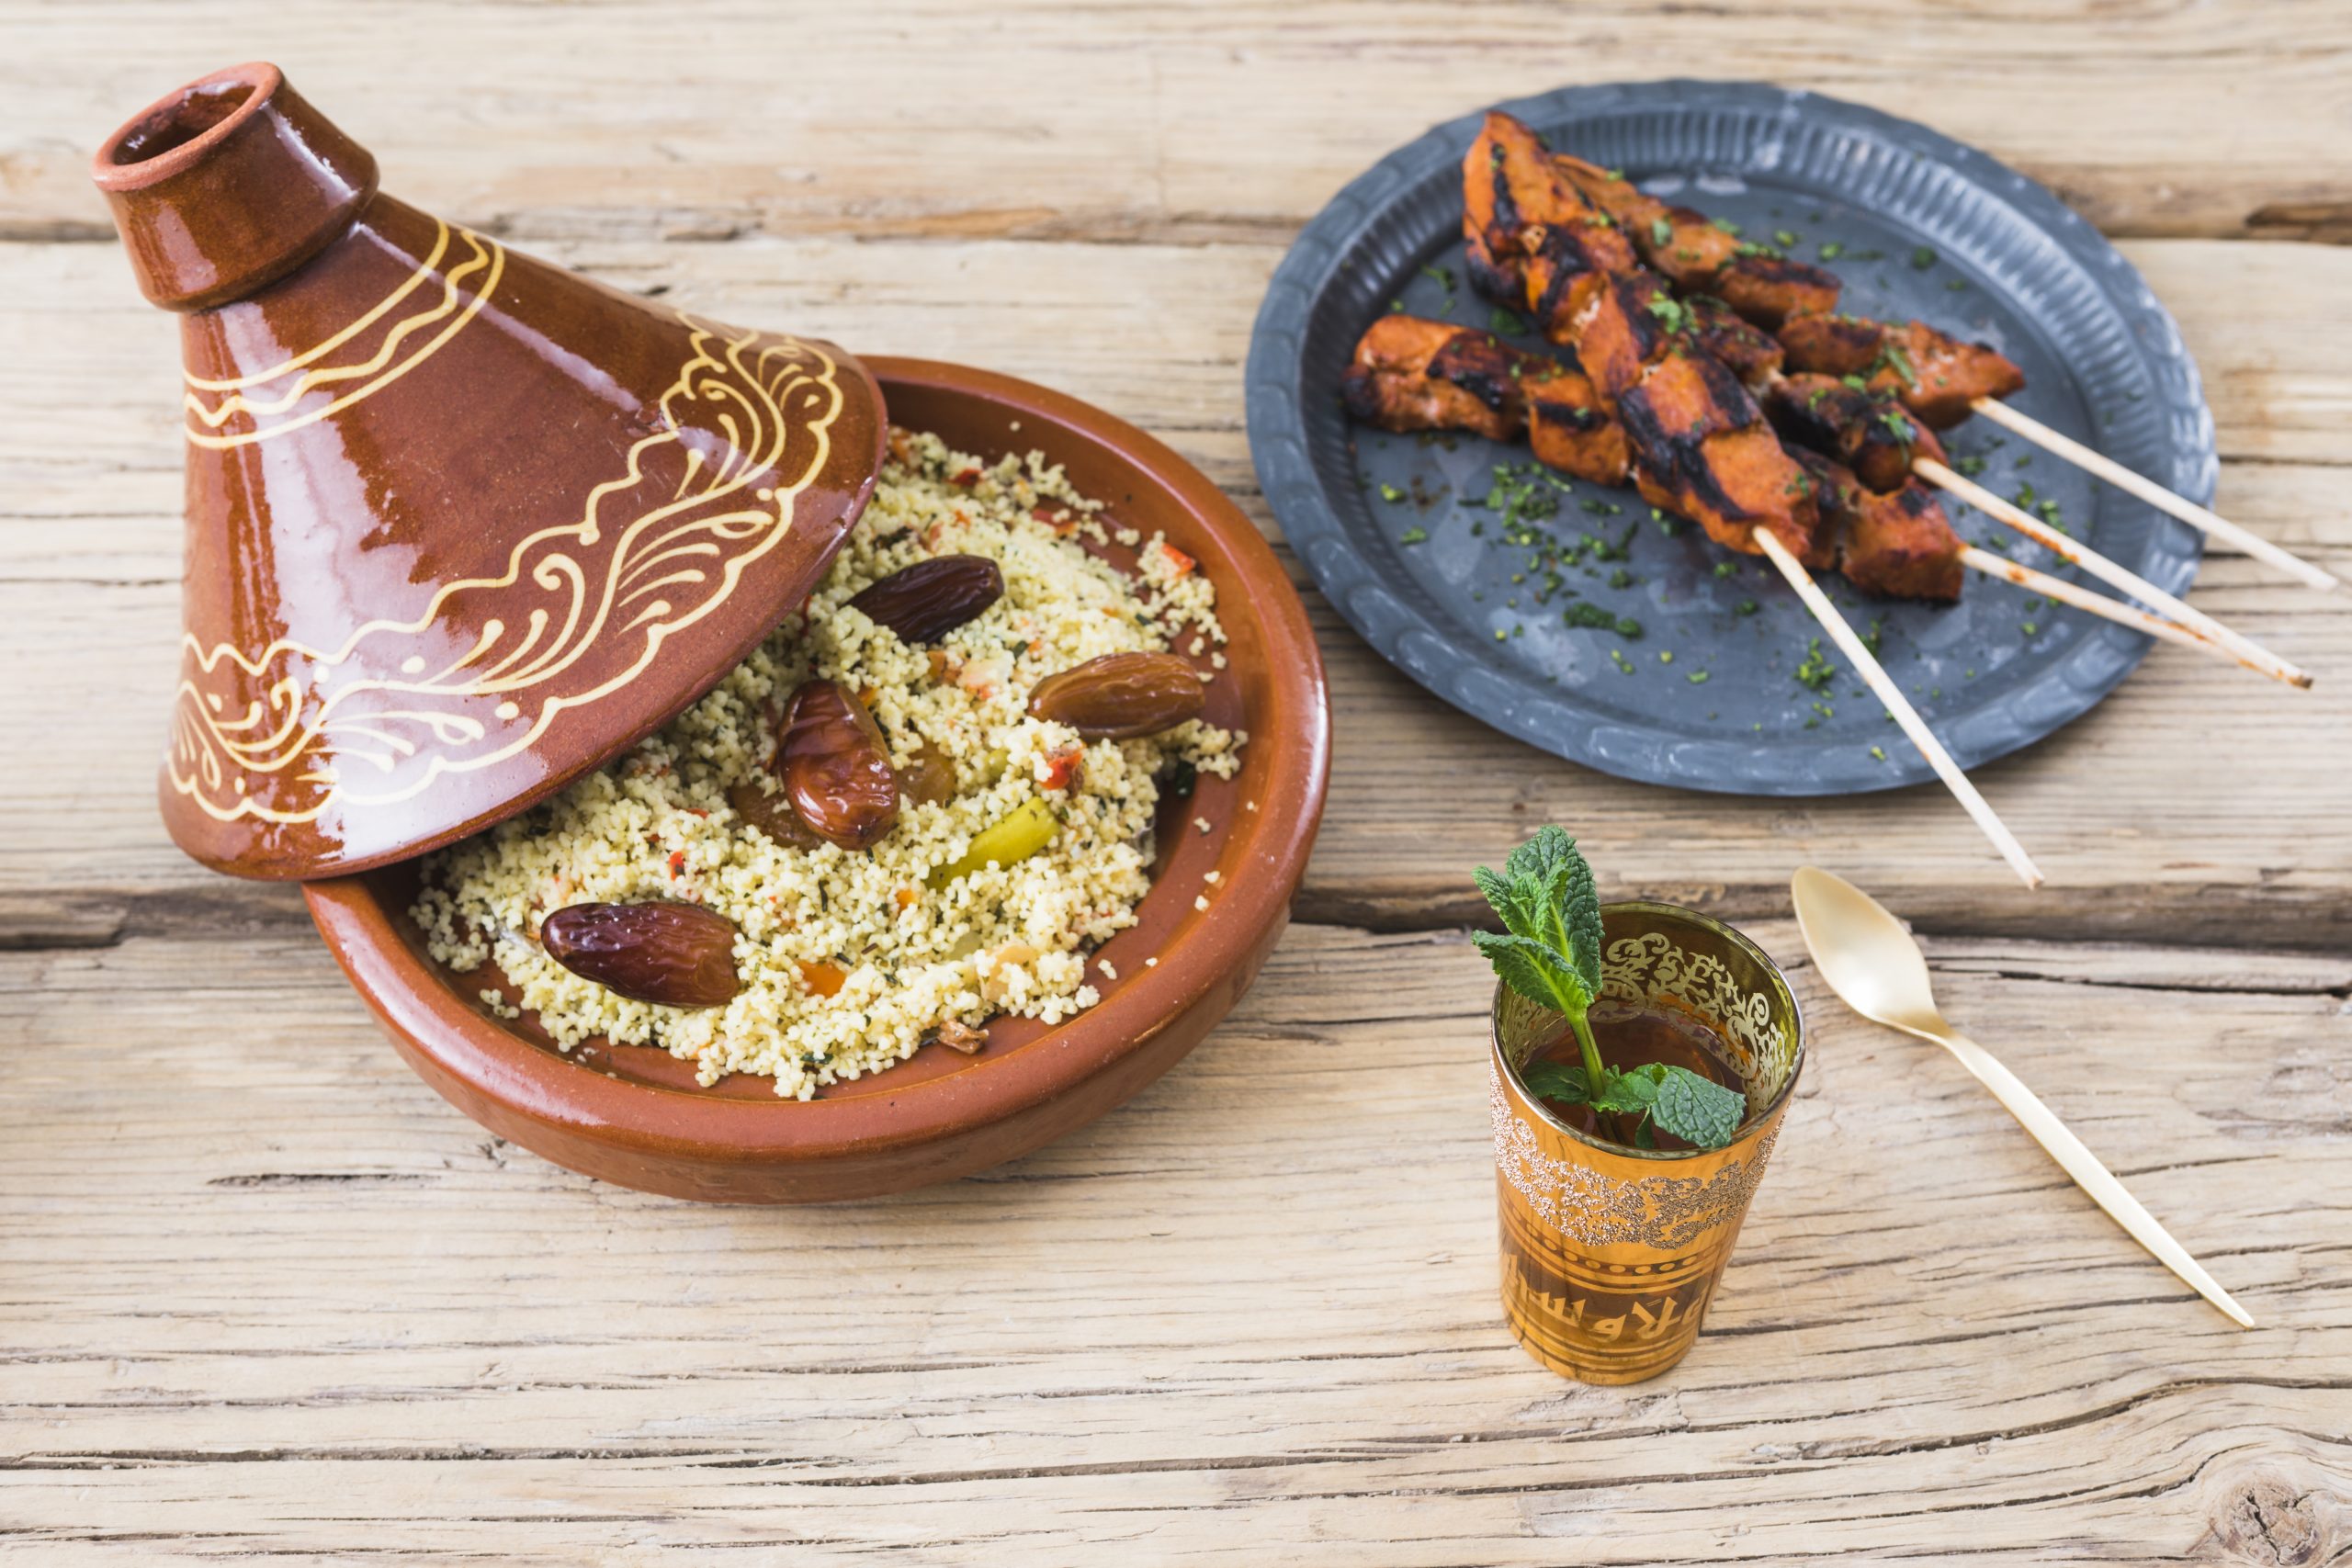 Quelle est le plat préféré des Marocains ?